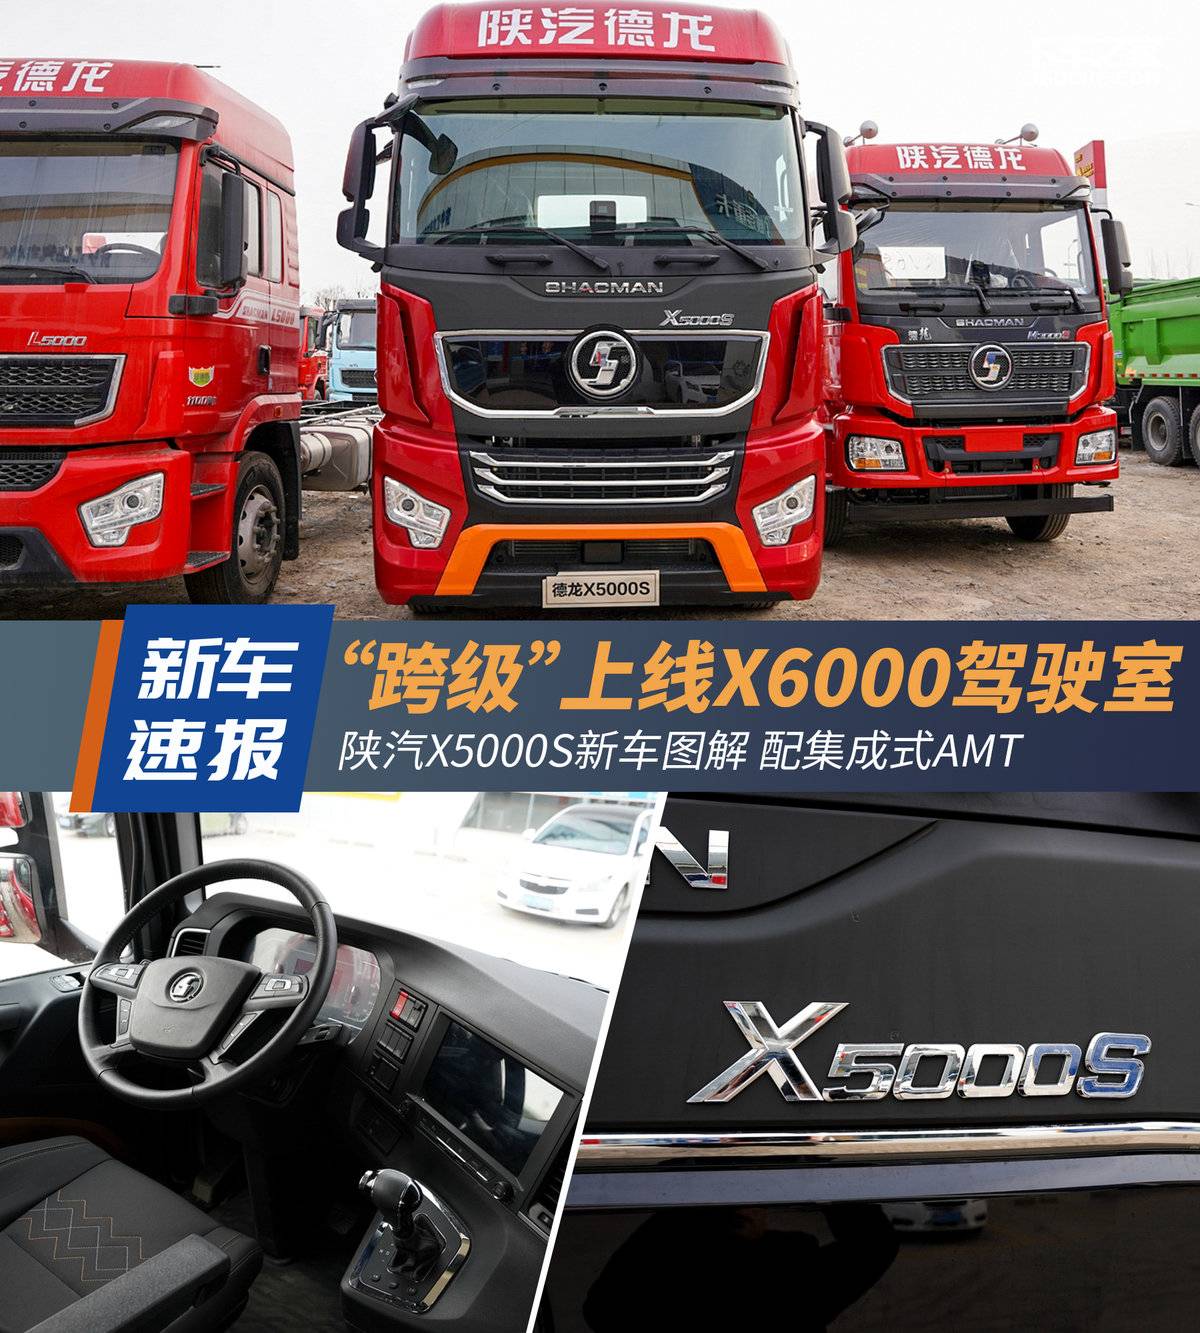 “跨级”上线X6000驾驶室！ 陕汽X5000S新车图解 配集成式AMT